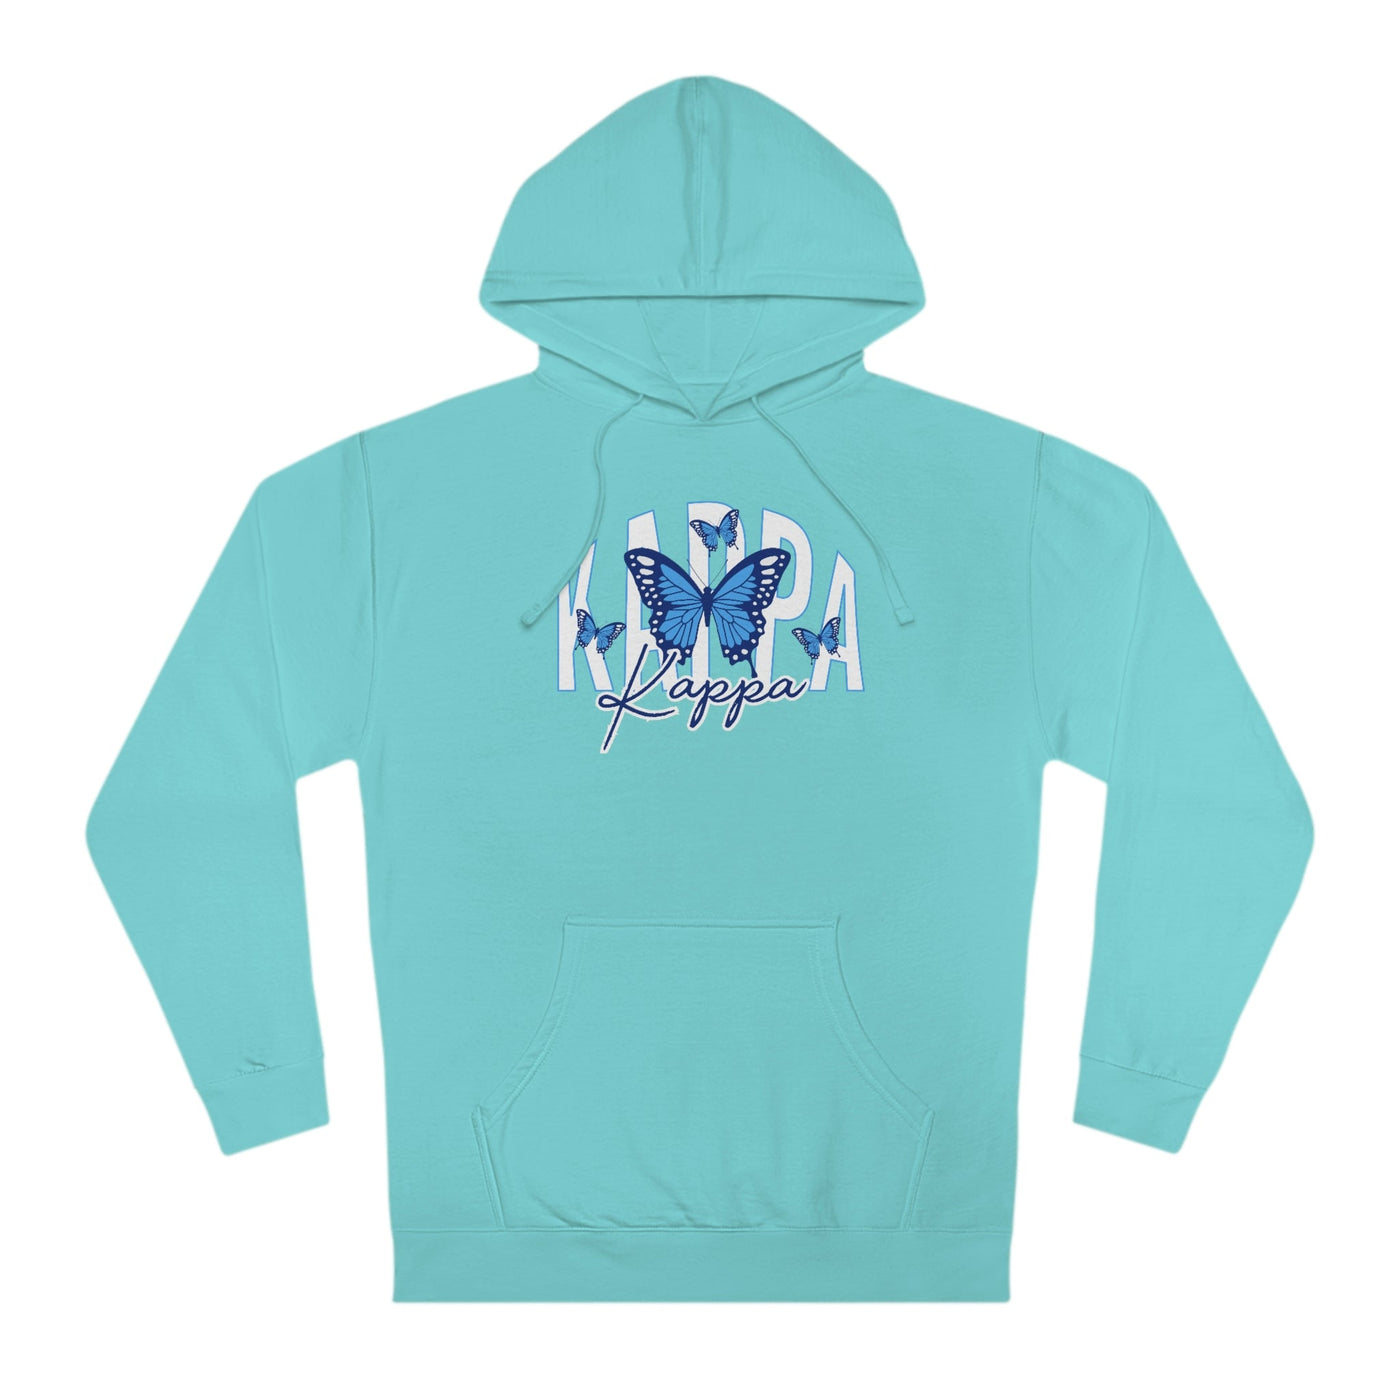 Kappa Kappa Gamma Baby Blue Butterfly Cute Sorority Sweatshirt